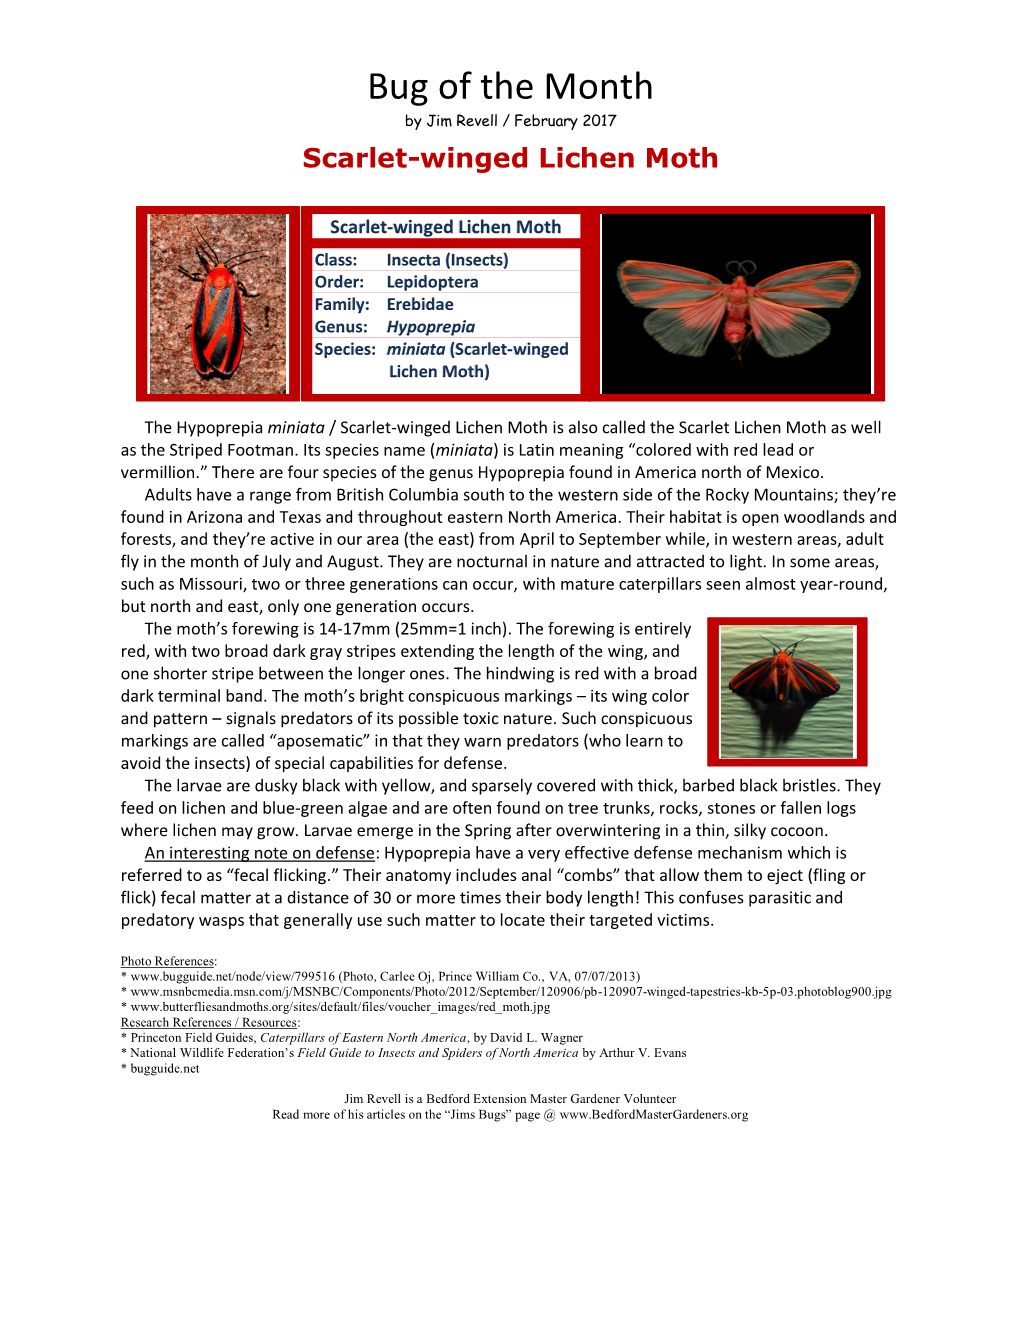 Scarlet-Winged Lichen Moth